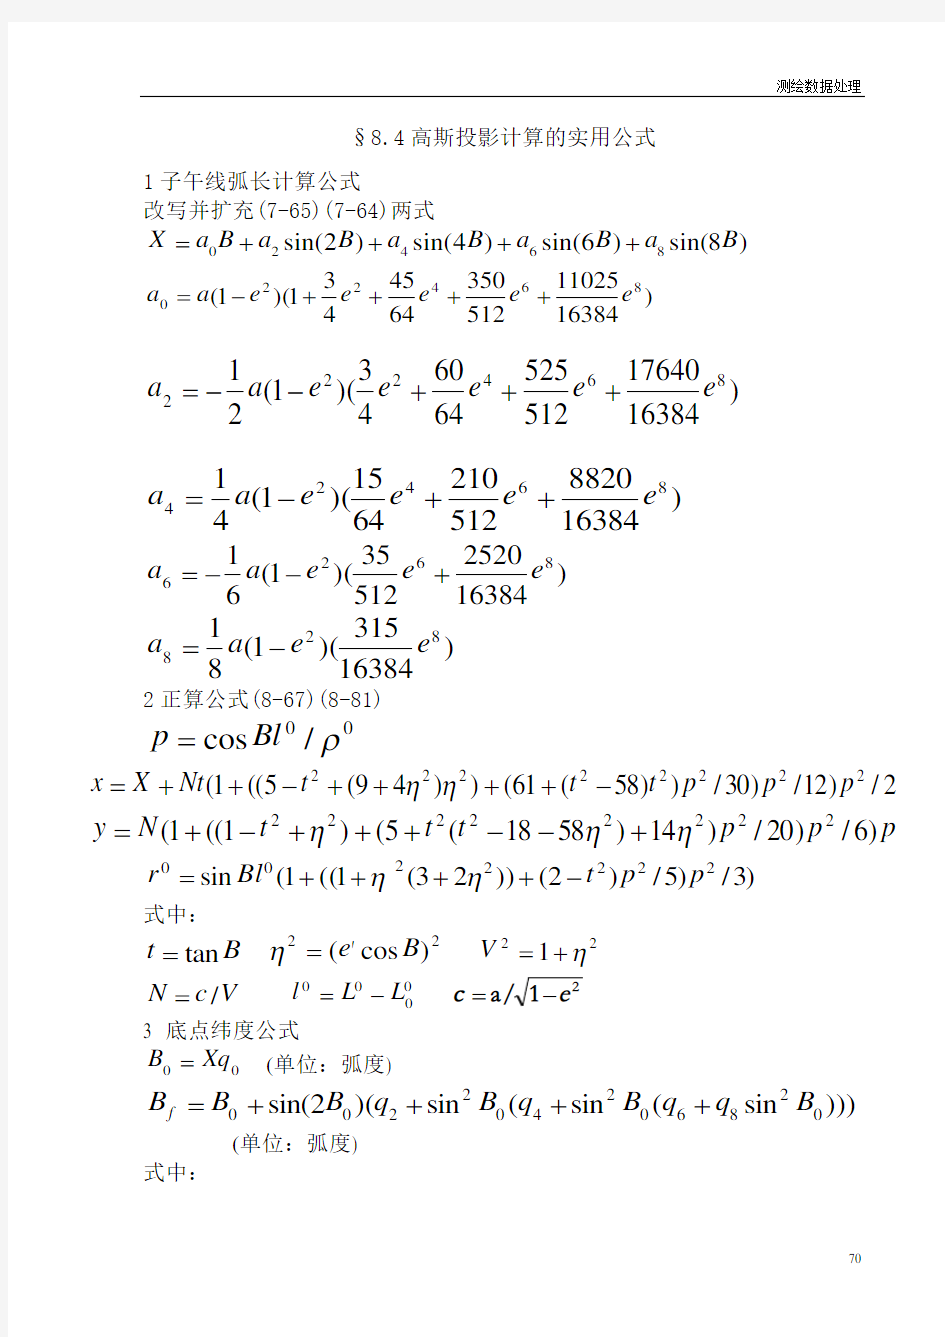 高斯投影计算的实用公式